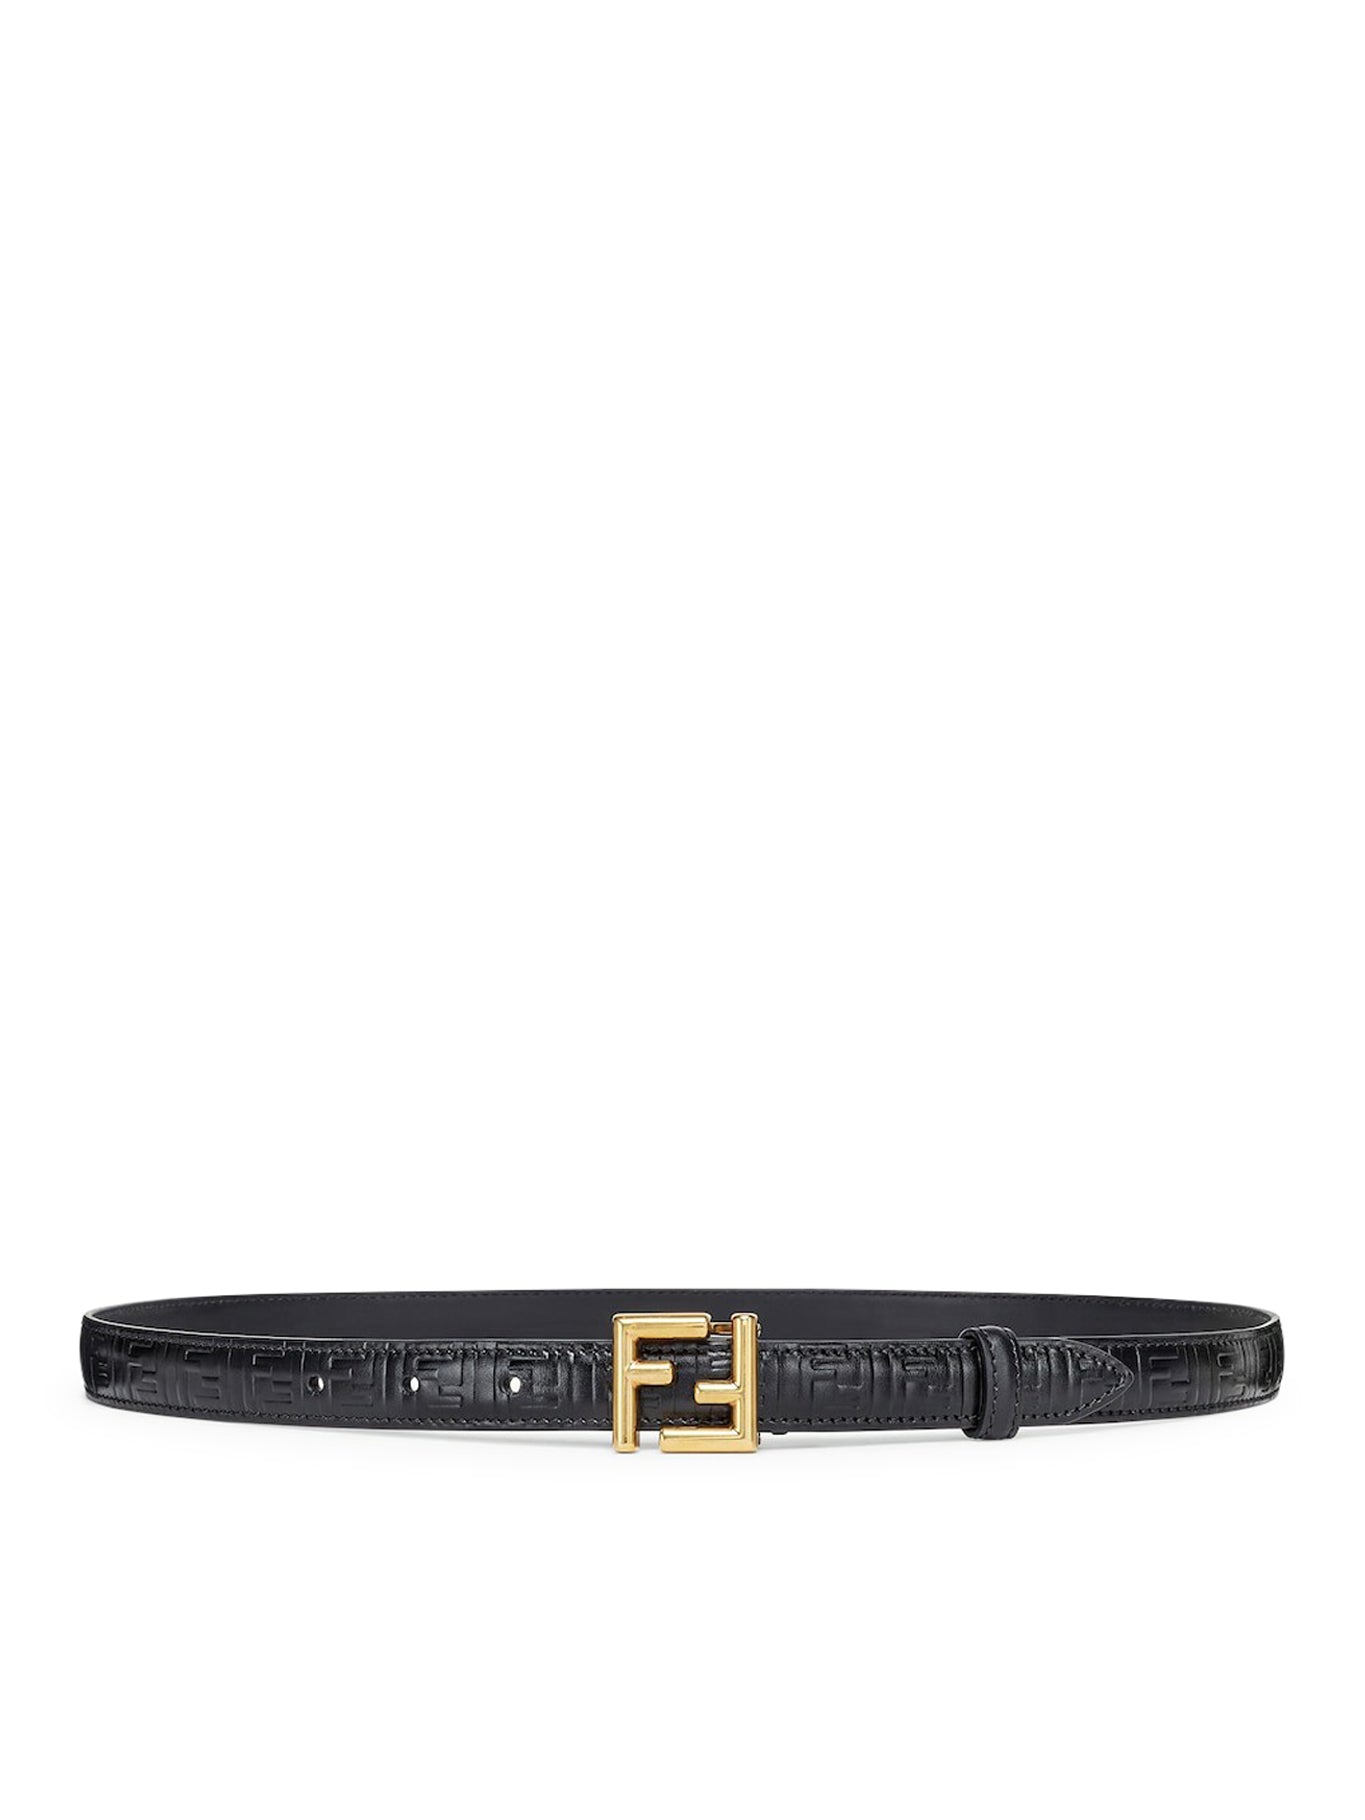 FENDI FF belt